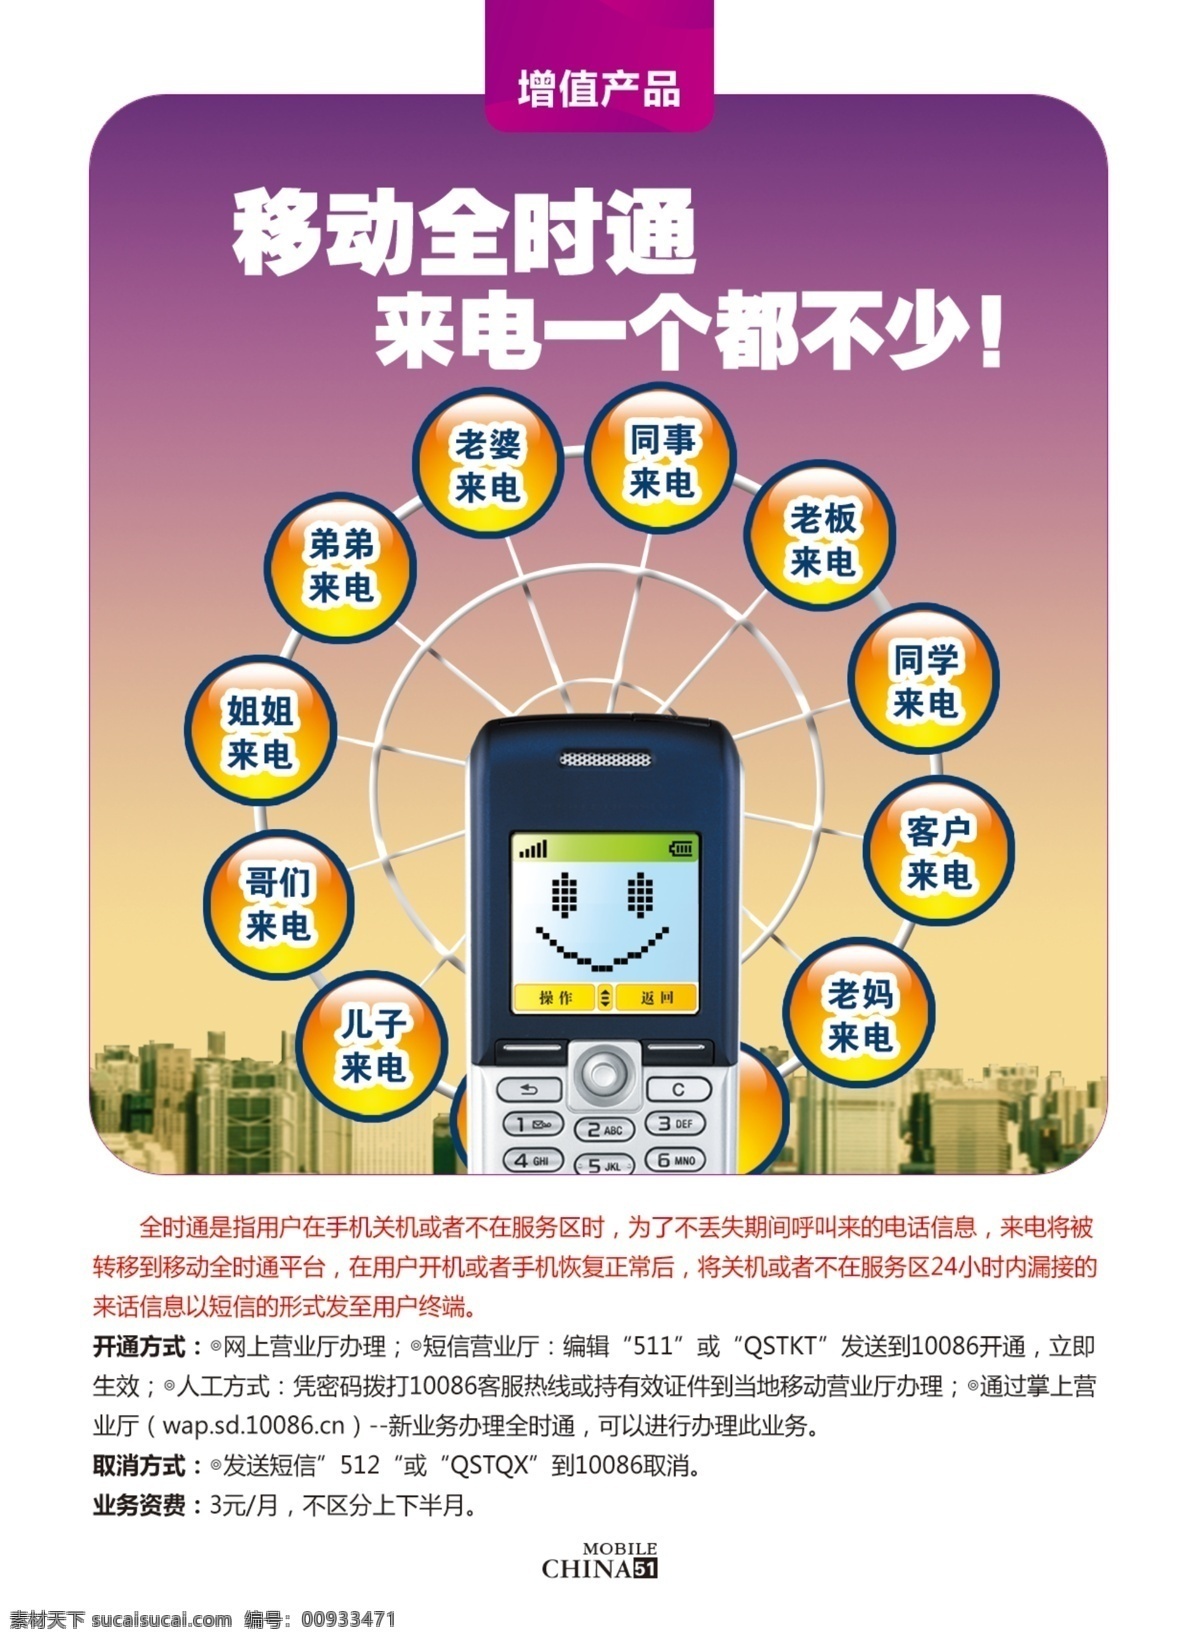 城市 广告设计模板 建筑 手机 水晶按钮 源文件 中国移动 移动全时通 来电 一个 都 不少 全时 通 业务办理 自费说明 中国移动通信 其他海报设计